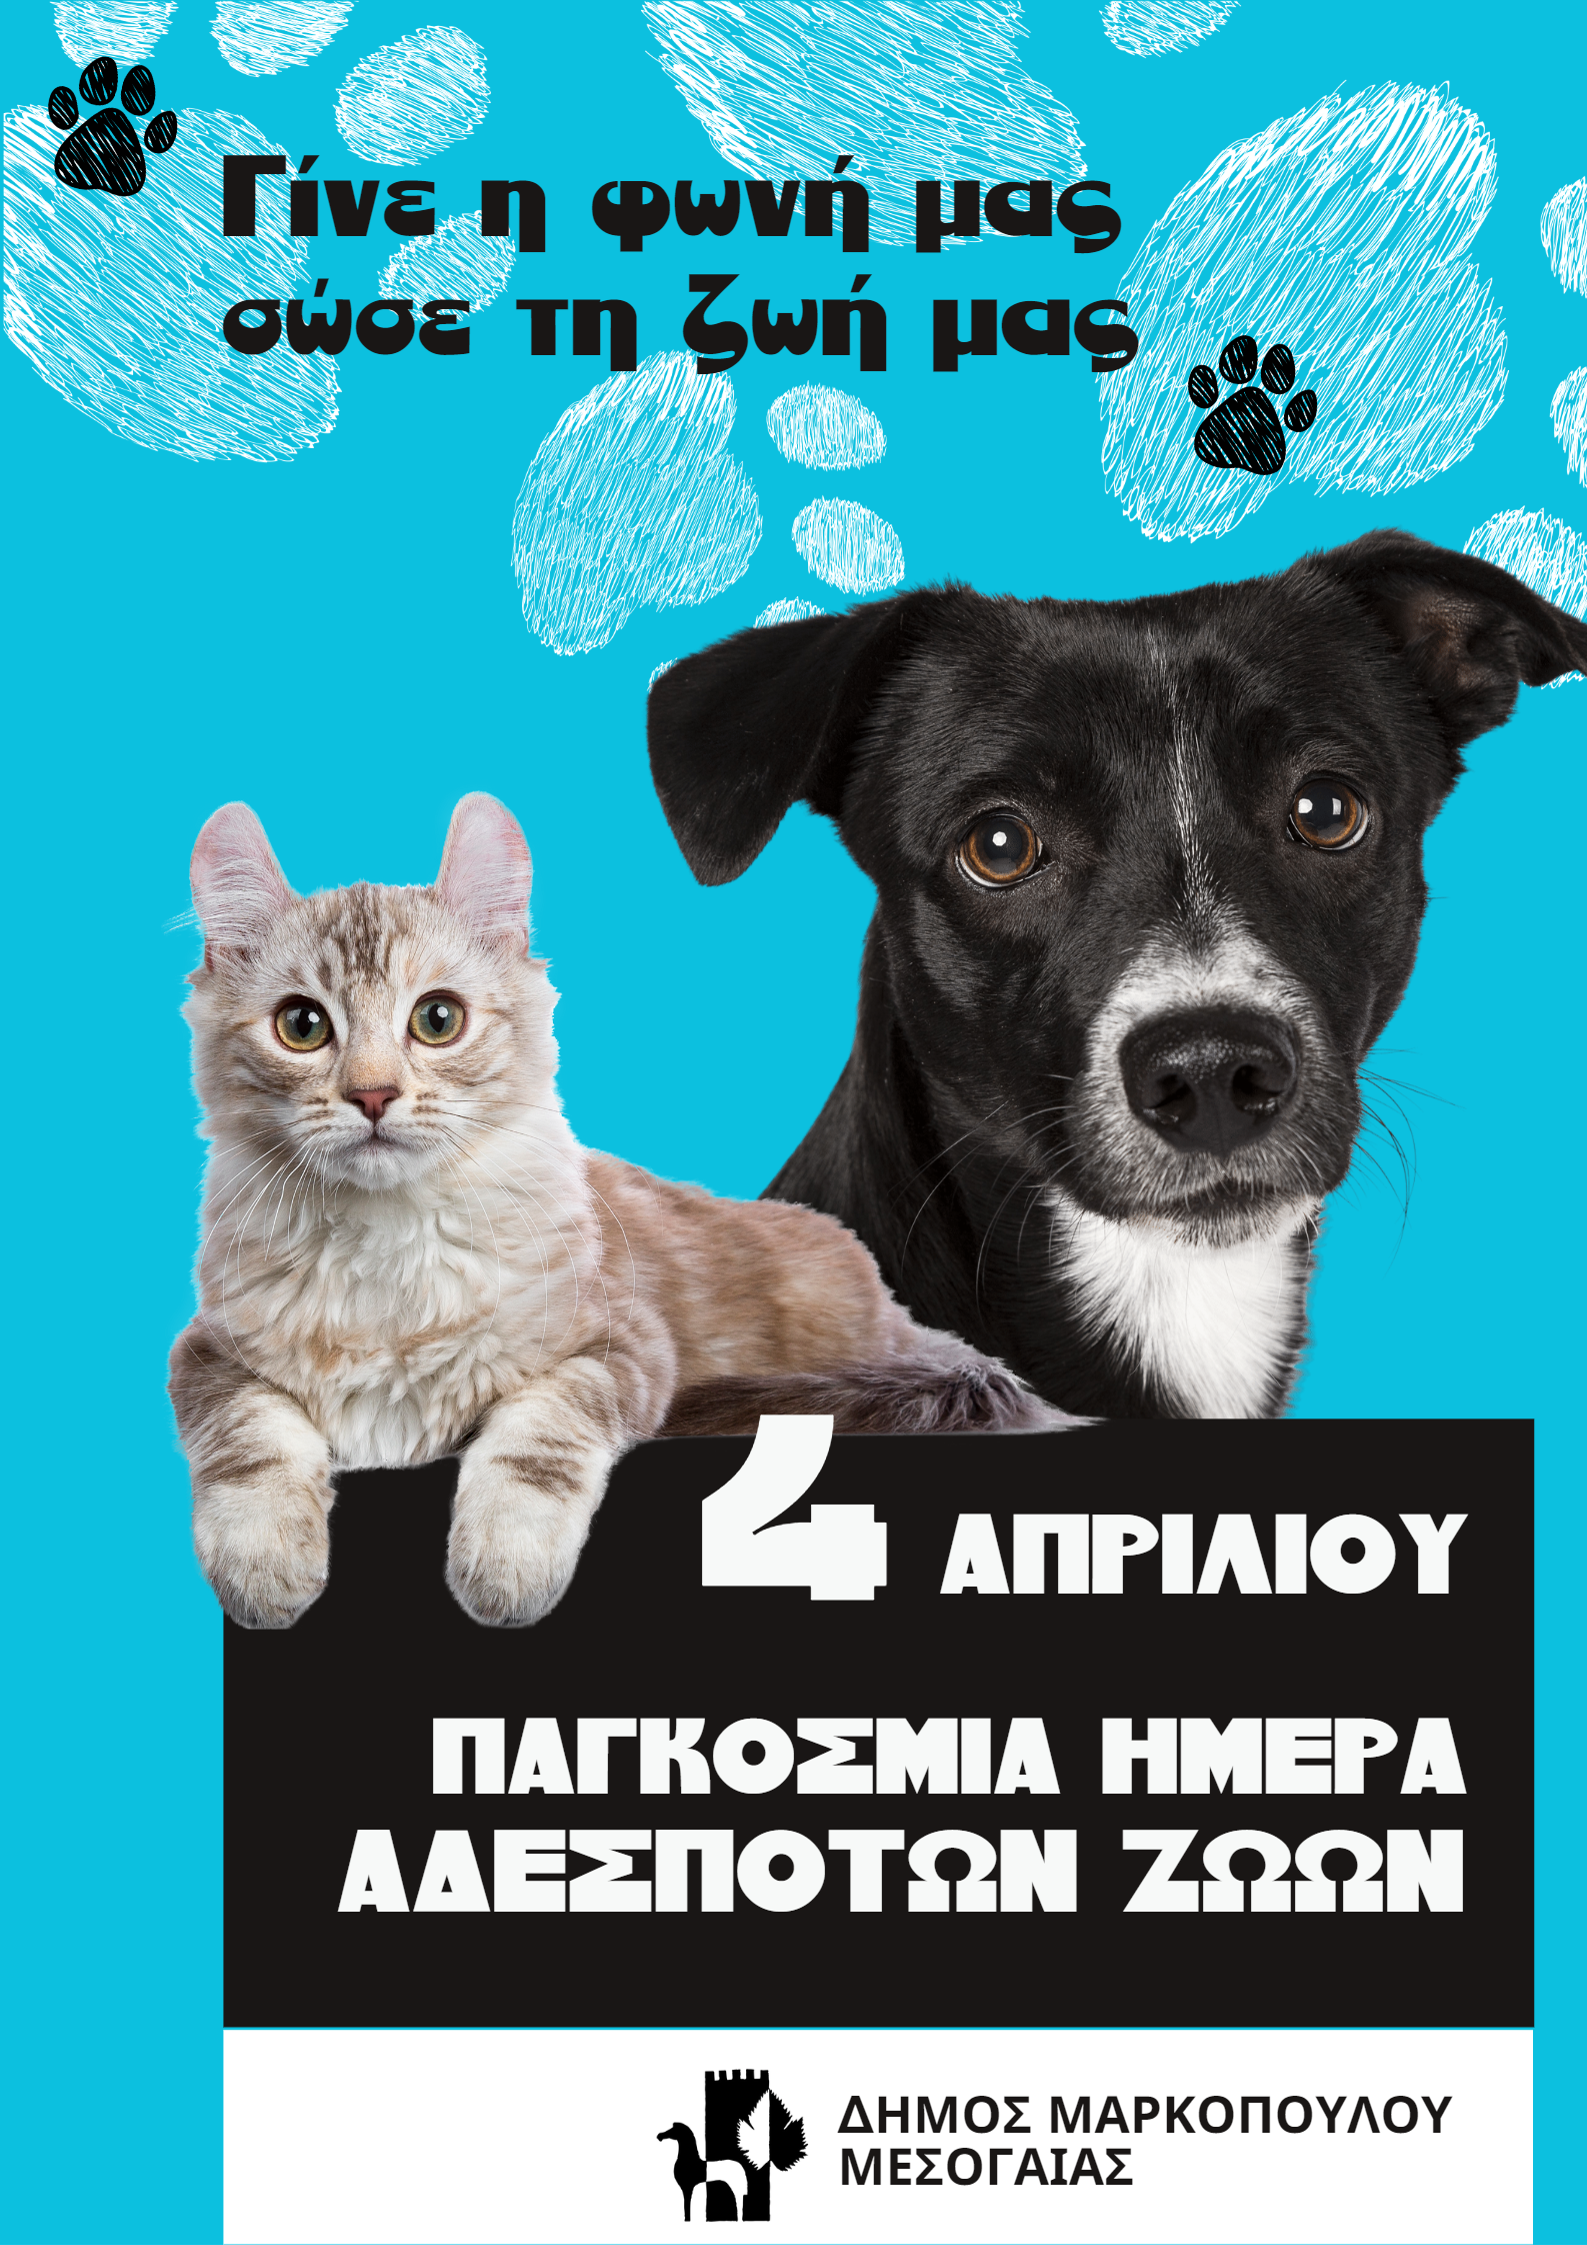 Μήνυμα του Δημάρχου Μαρκοπούλου Μεσογαίας Κωνσταντίνου Αλλαγιάννη  για την Παγκόσμια Ημέρα Αδέσποτων Ζώων